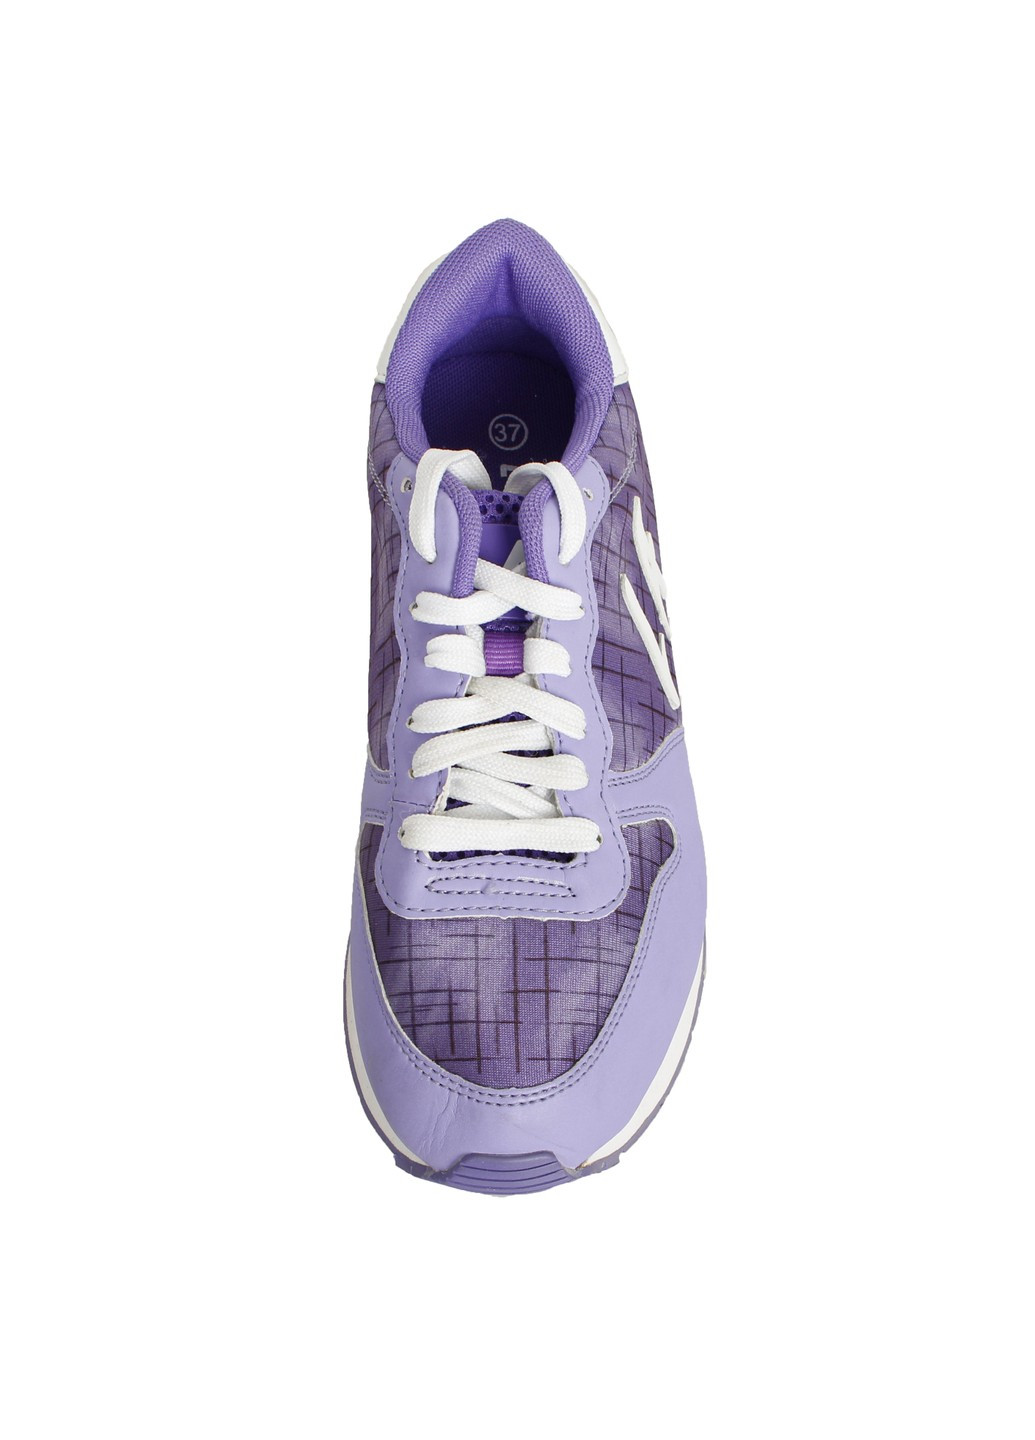 Фіолетові кросівки жіночі LA Gear